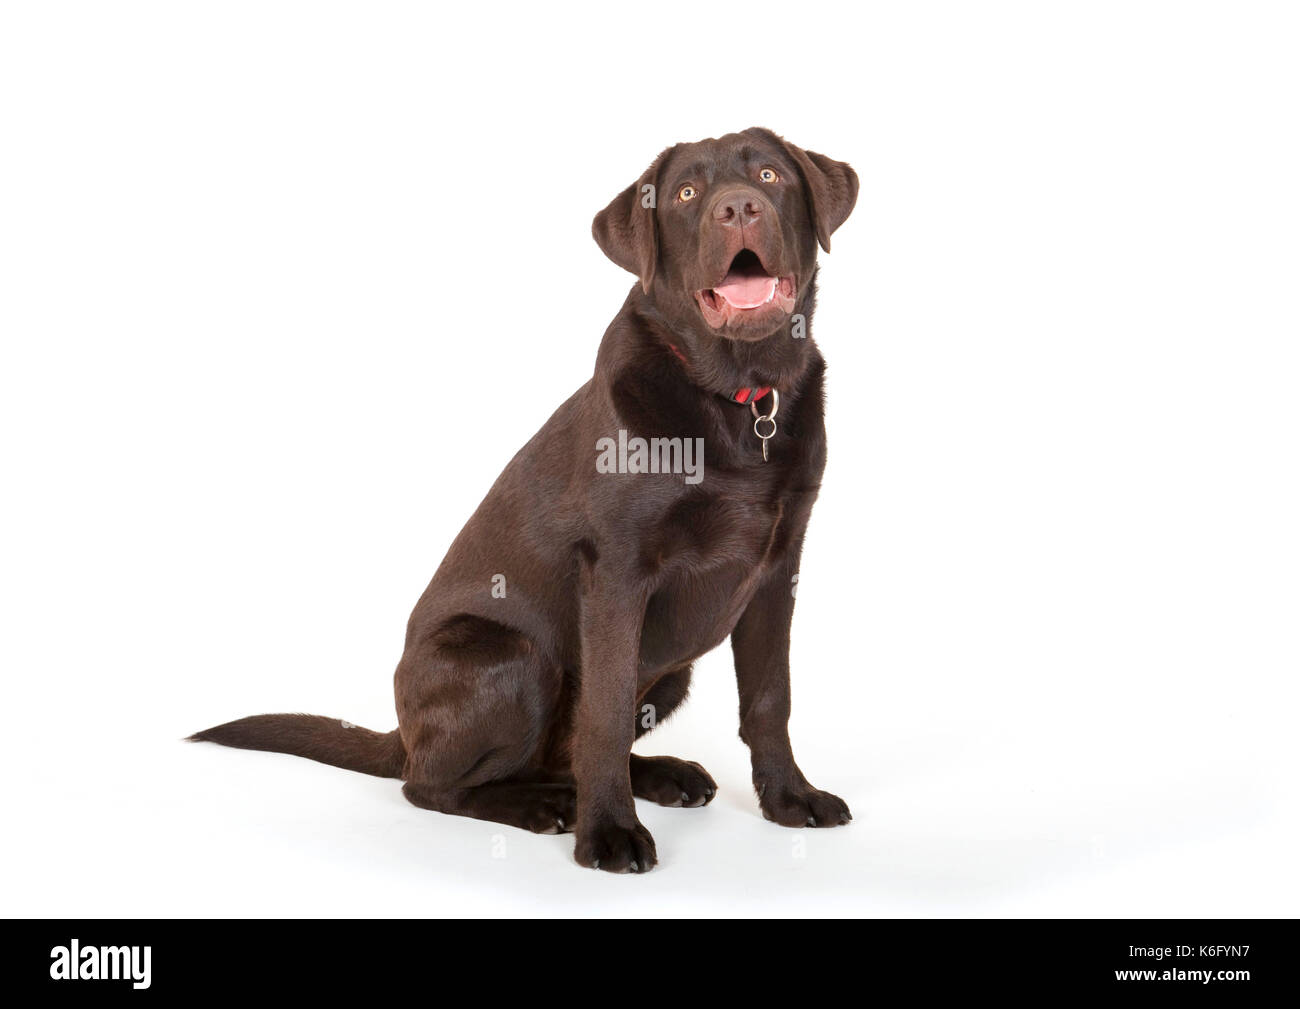 6 mes de edad, perro labrador en studio, reino unido, color marrón  chocolate, sentado, mirando alerta Fotografía de stock - Alamy